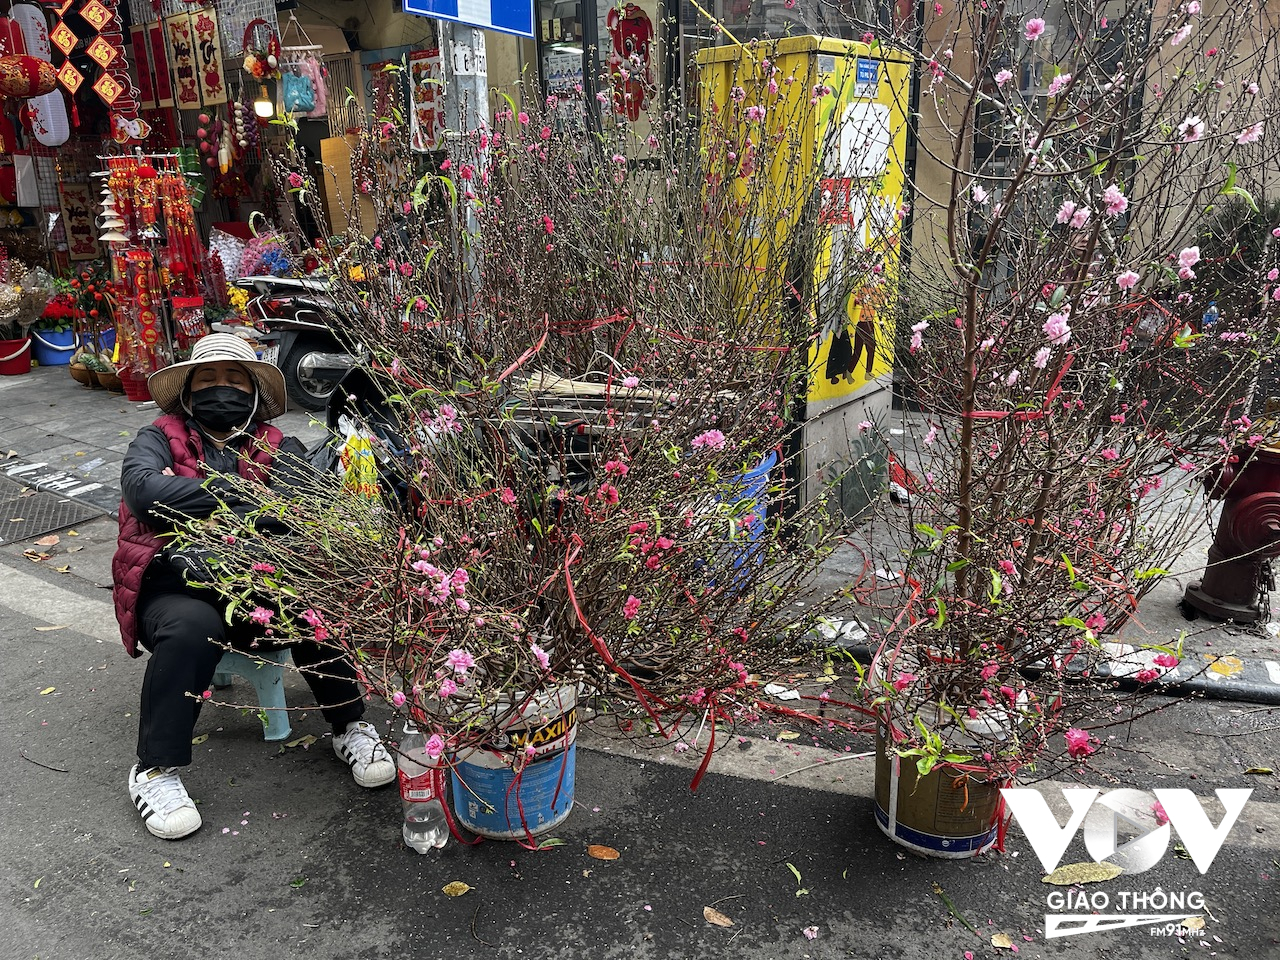 Dù chợ hoa Hàng Lược chưa chính thức đi vào hoạt động, nhưng một vài người đã mang hoa đào ra bày bán ở đây